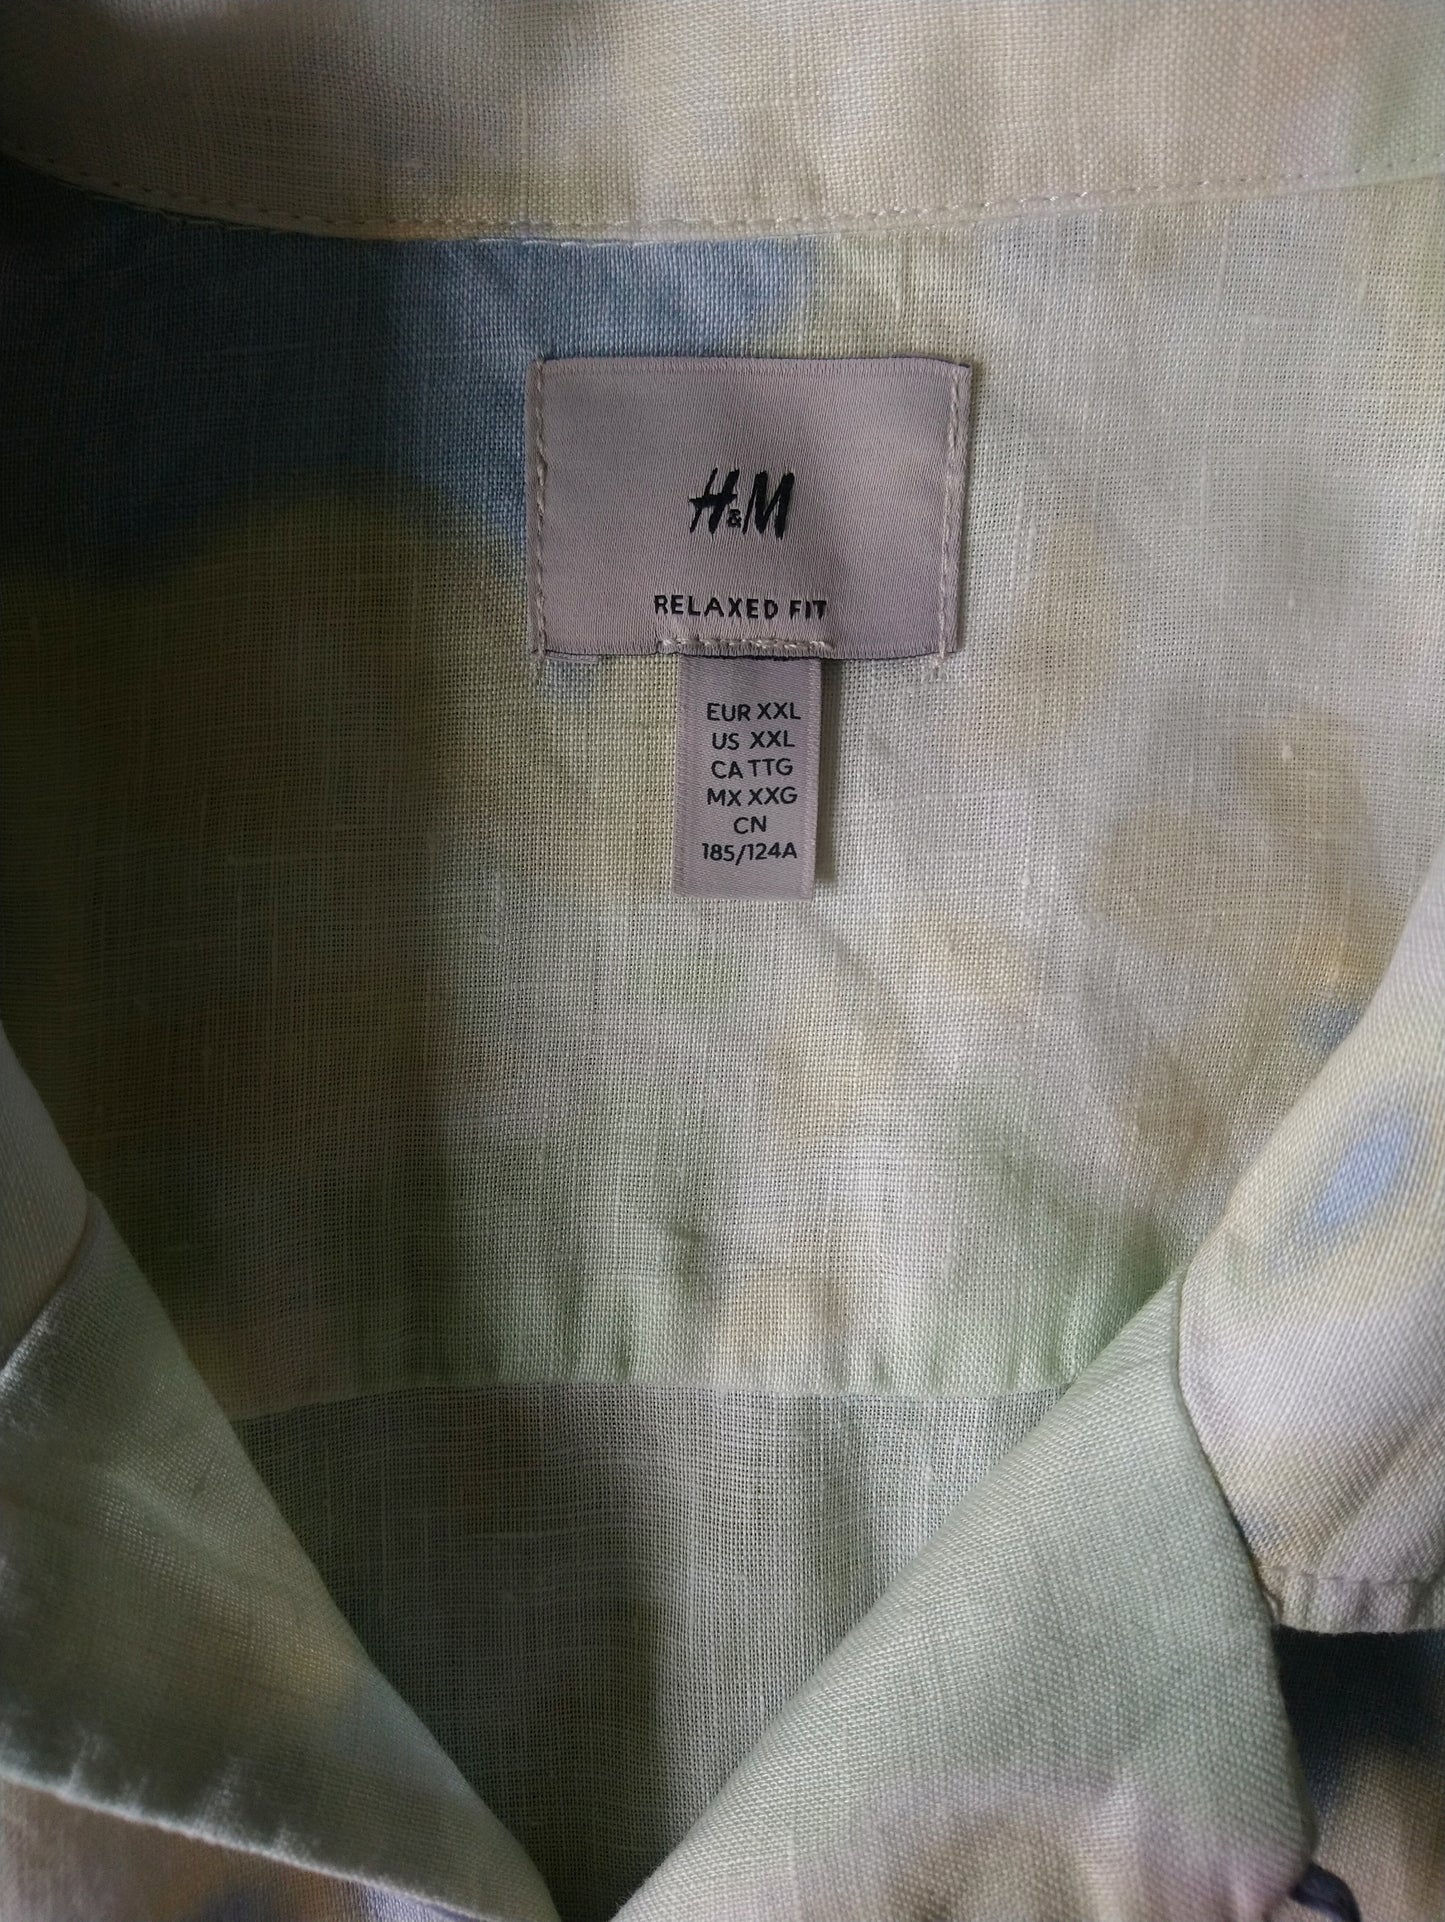 Sleeve corta della camicia di lino H&M. Colore di verde blu giallo. Dimensione 2xl / xxl. Vestibilità morbida.